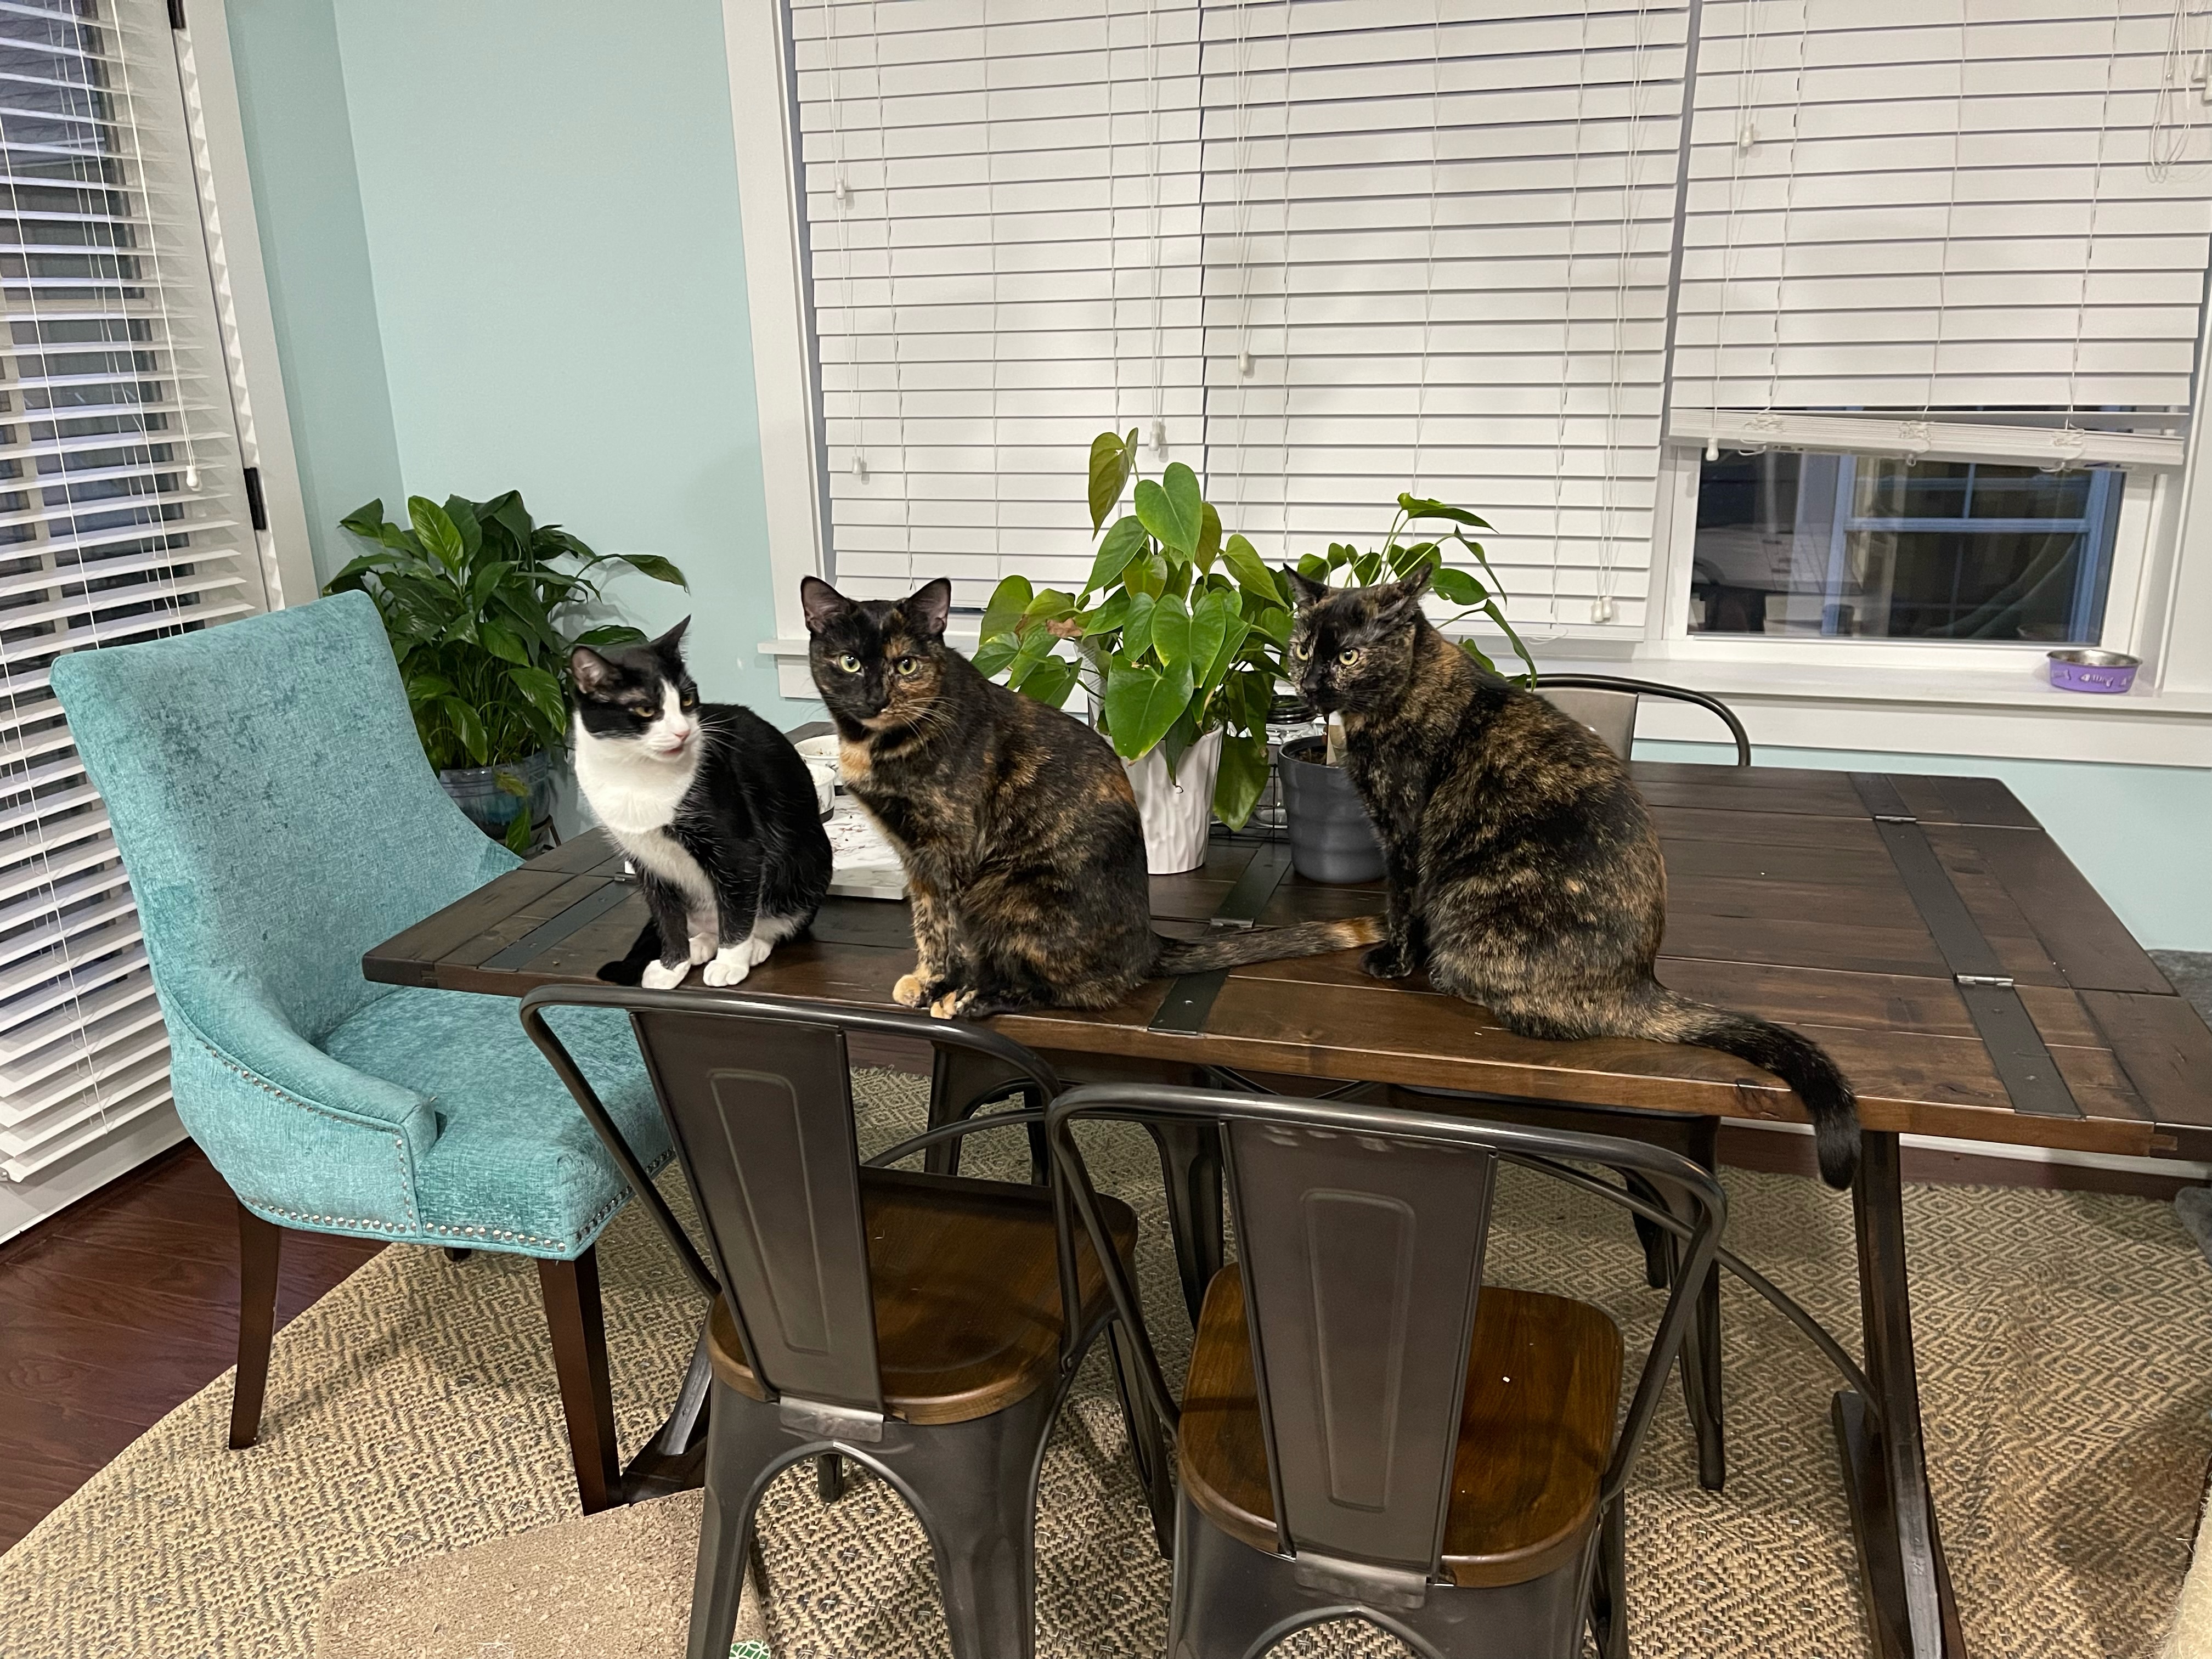 Patricia's three cats